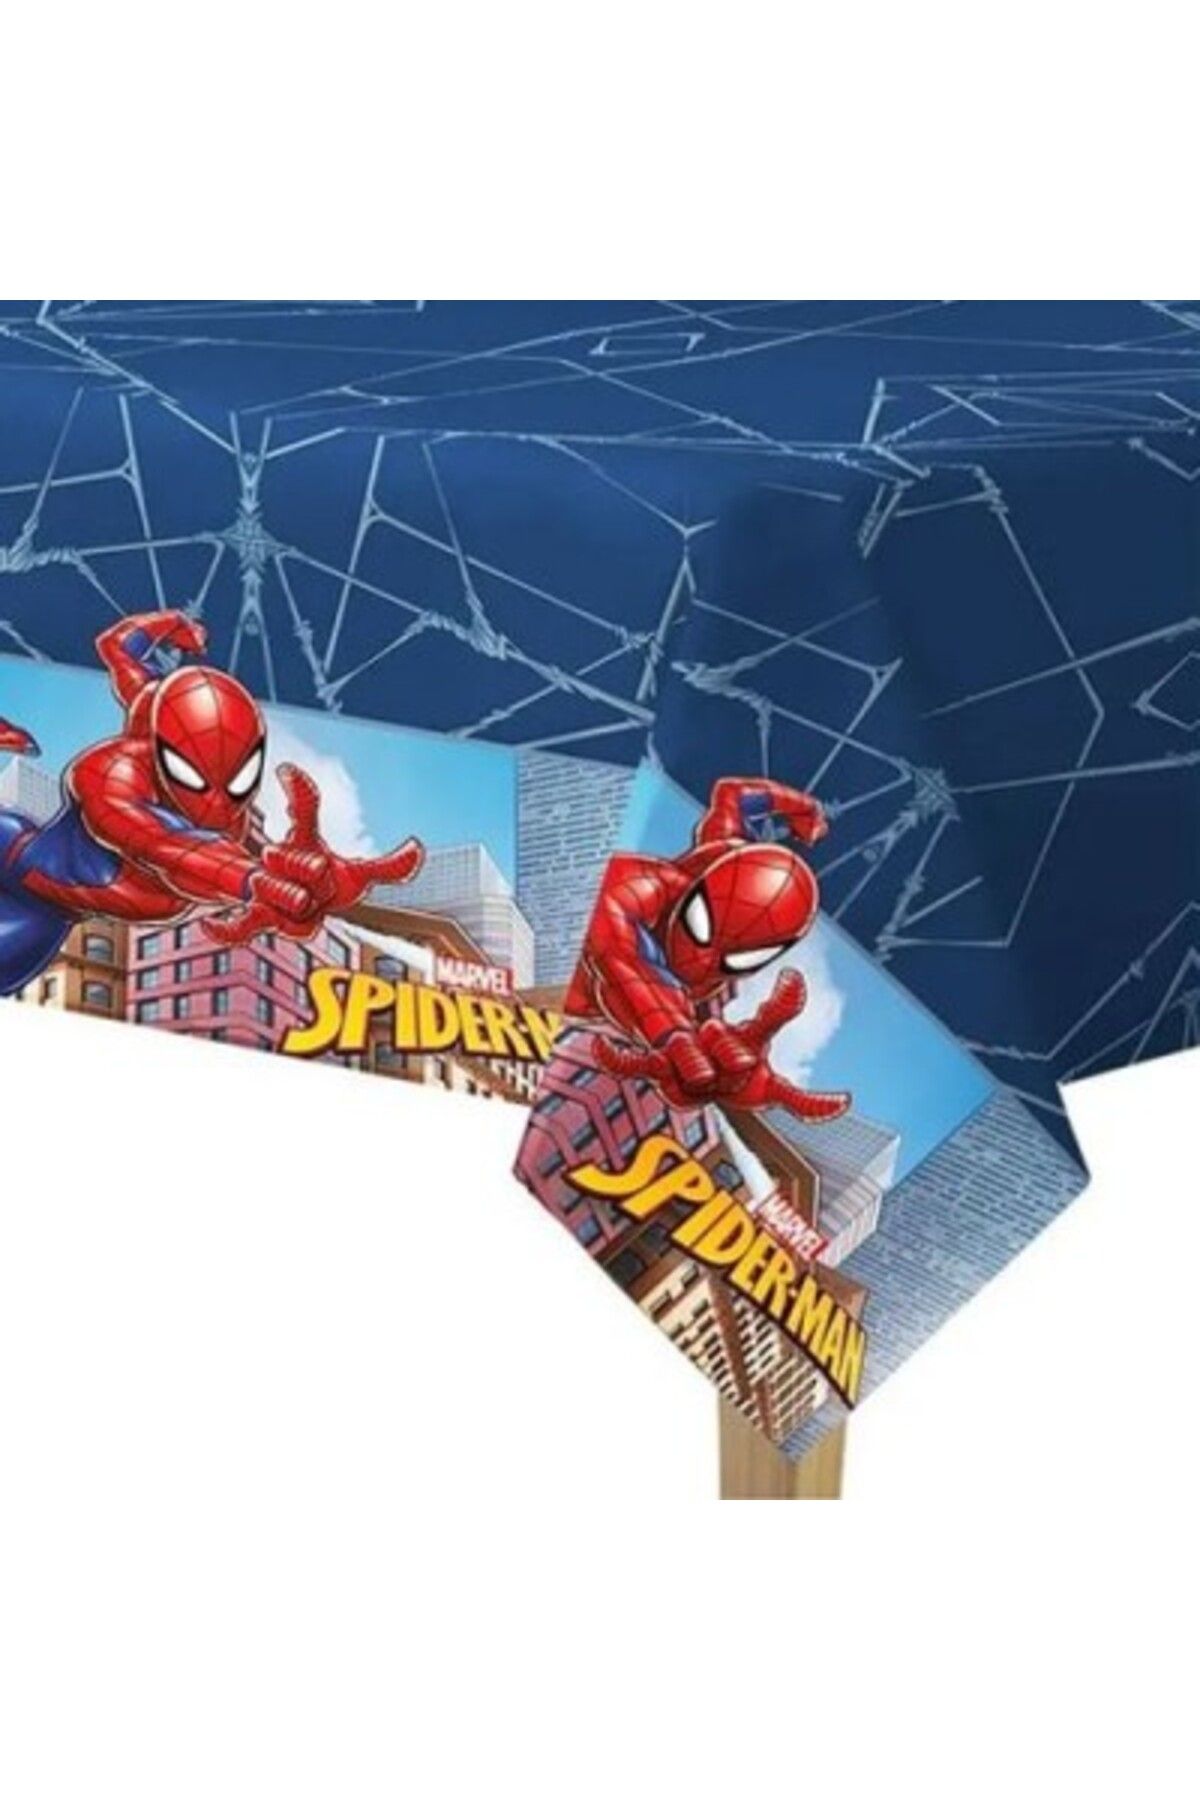 Spiderman MASA ÖRTÜSÜ 120*180CM

LİSANSLI ÜRÜN